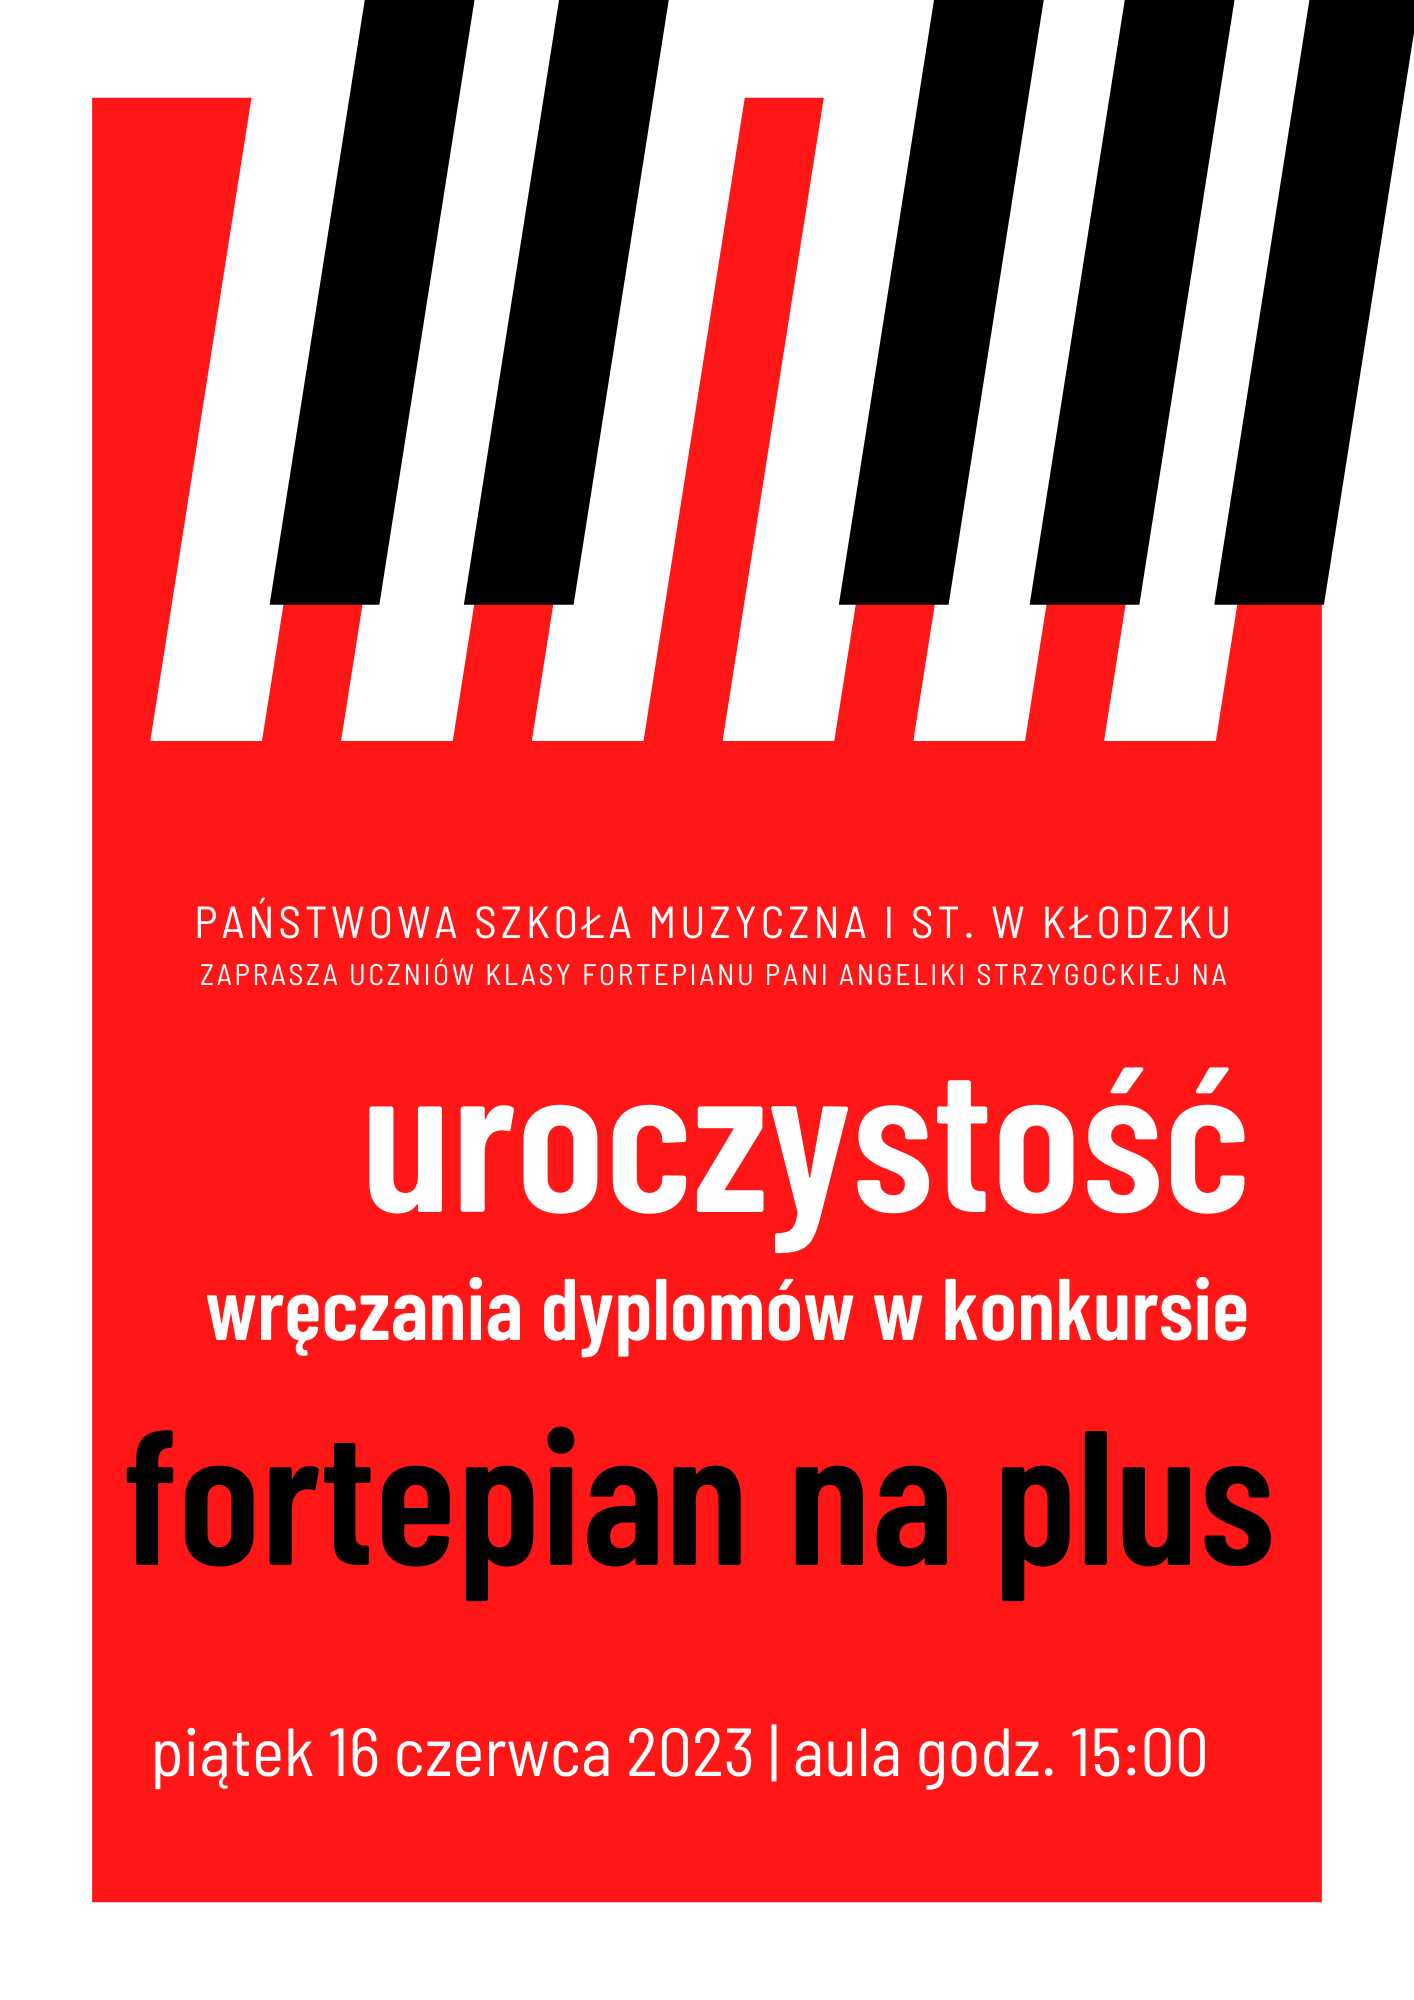 Plakat na czerwonym tle z grafiką klawiatury fortepianu u góry plakatu z tekstem "Uroczystość wręczania dyplomów w konkursie fortepian na plus" oraz szczegółowymi informacjami dot. wydarzenia